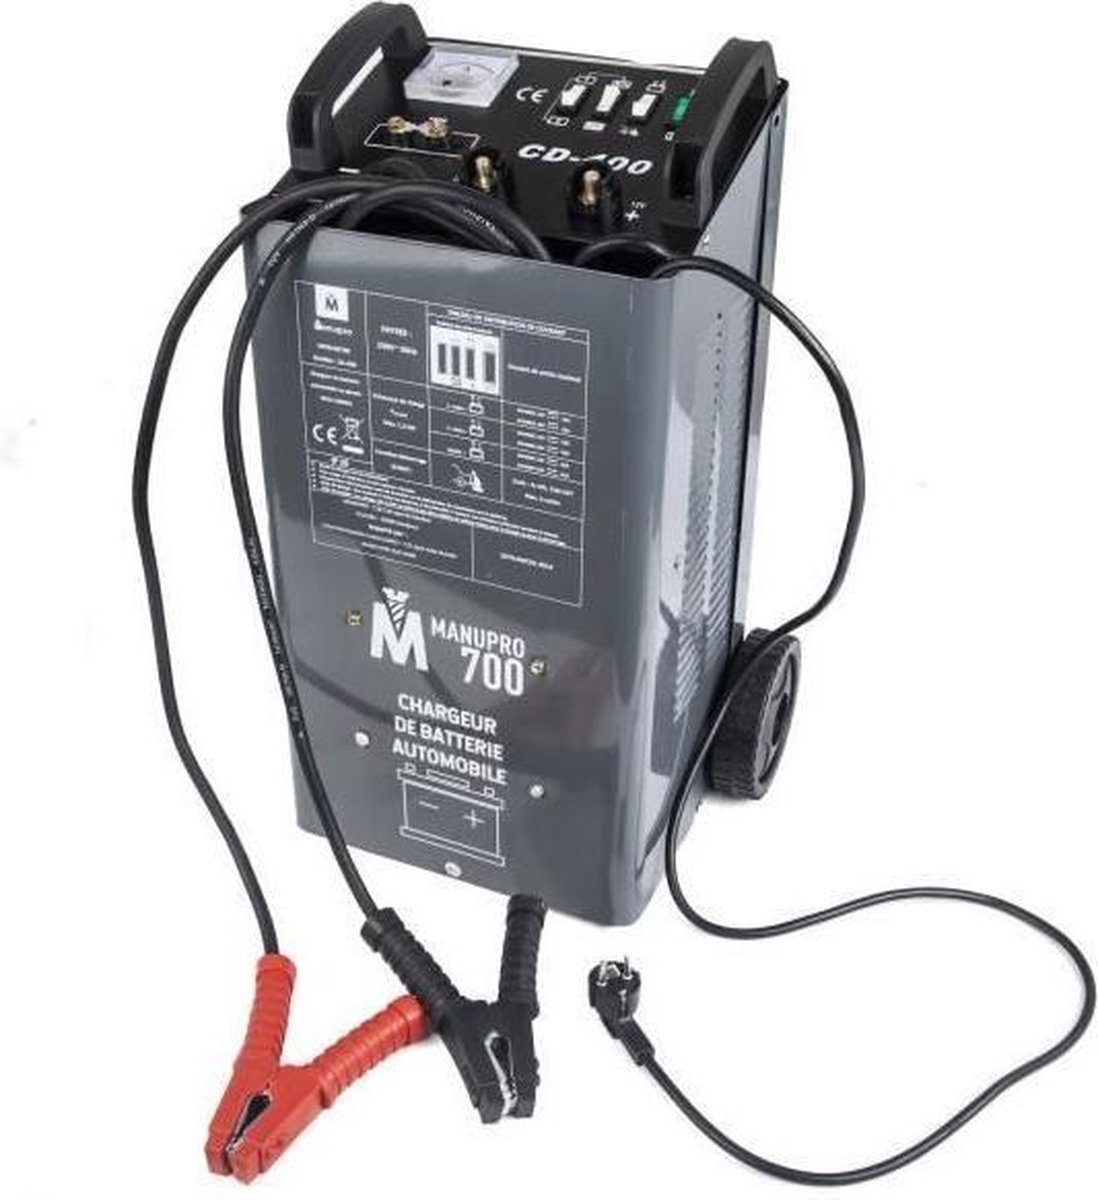 Chargeur de batterie d'appoint à démarrage automatique - MANUPRO 700 - 40A  1400W 12 / 24V